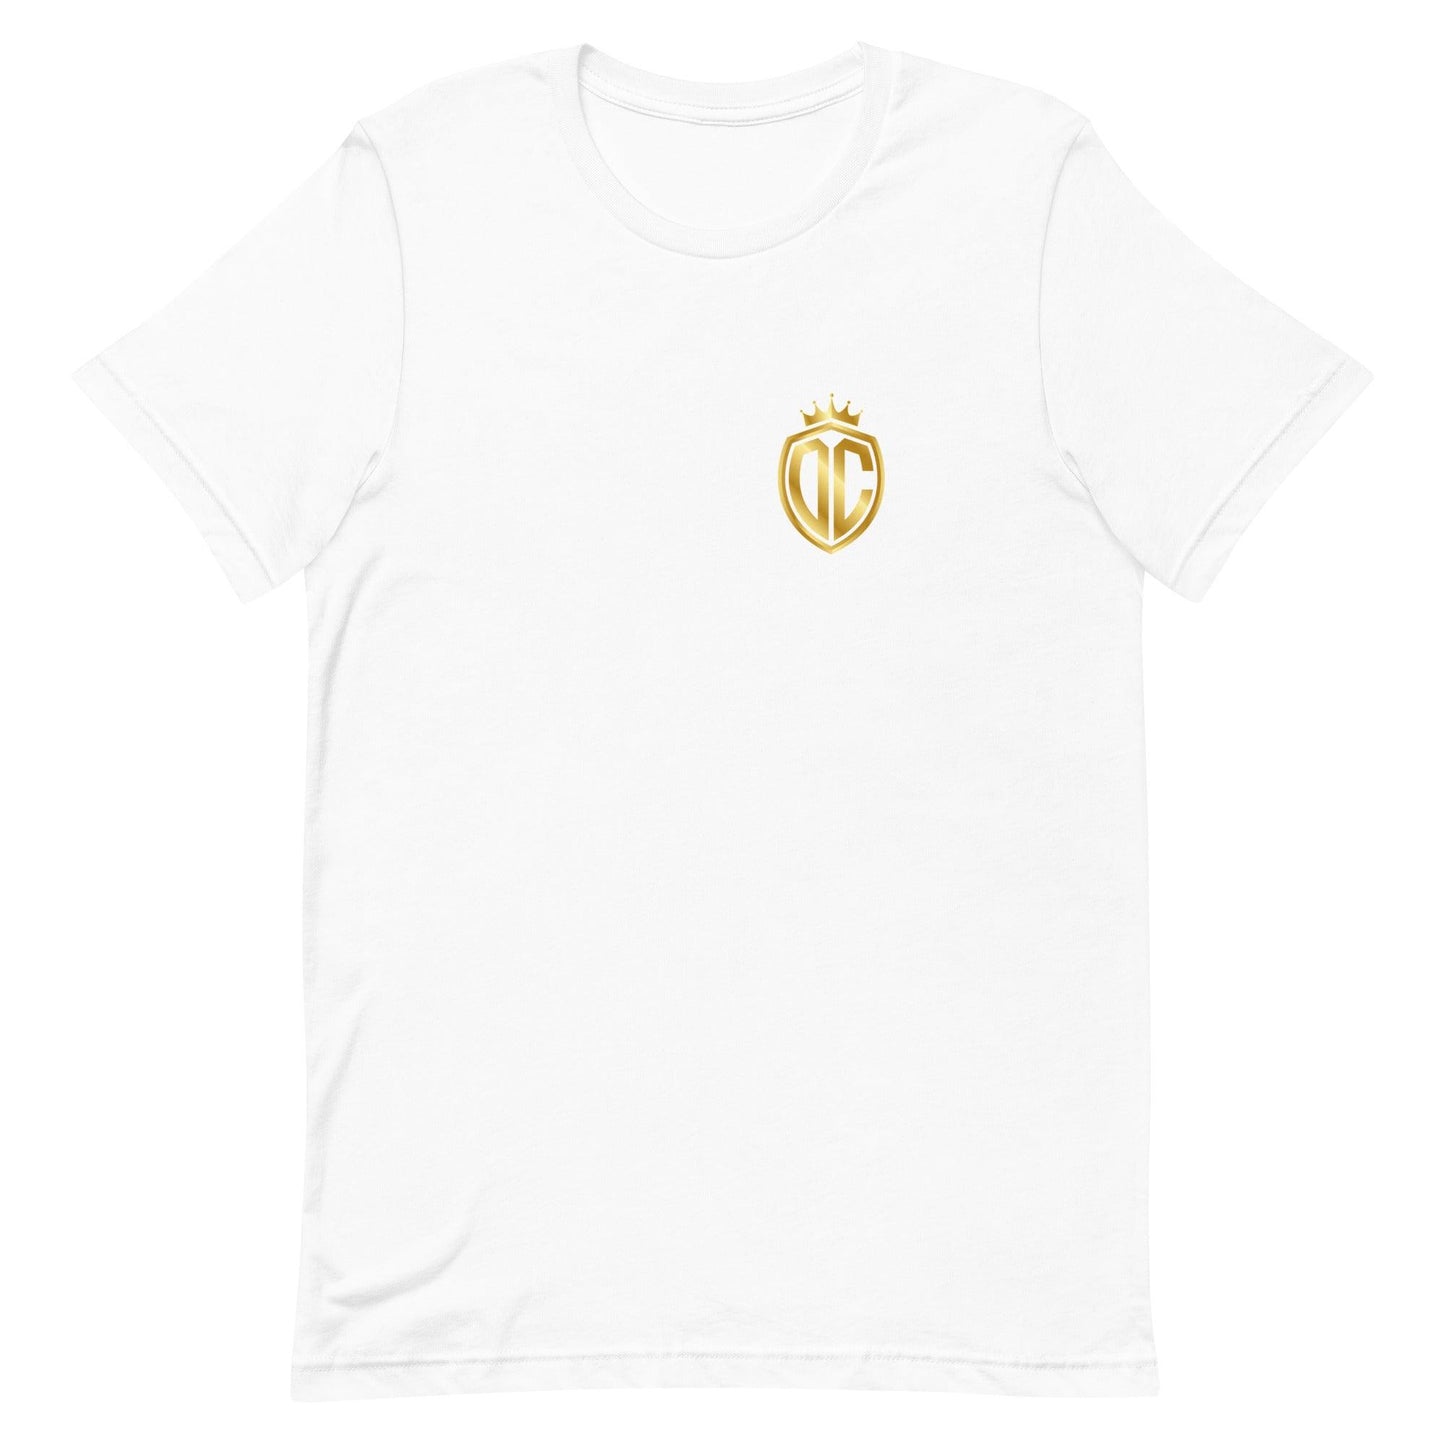 Donovan Cash "Elite" t-shirt - Fan Arch